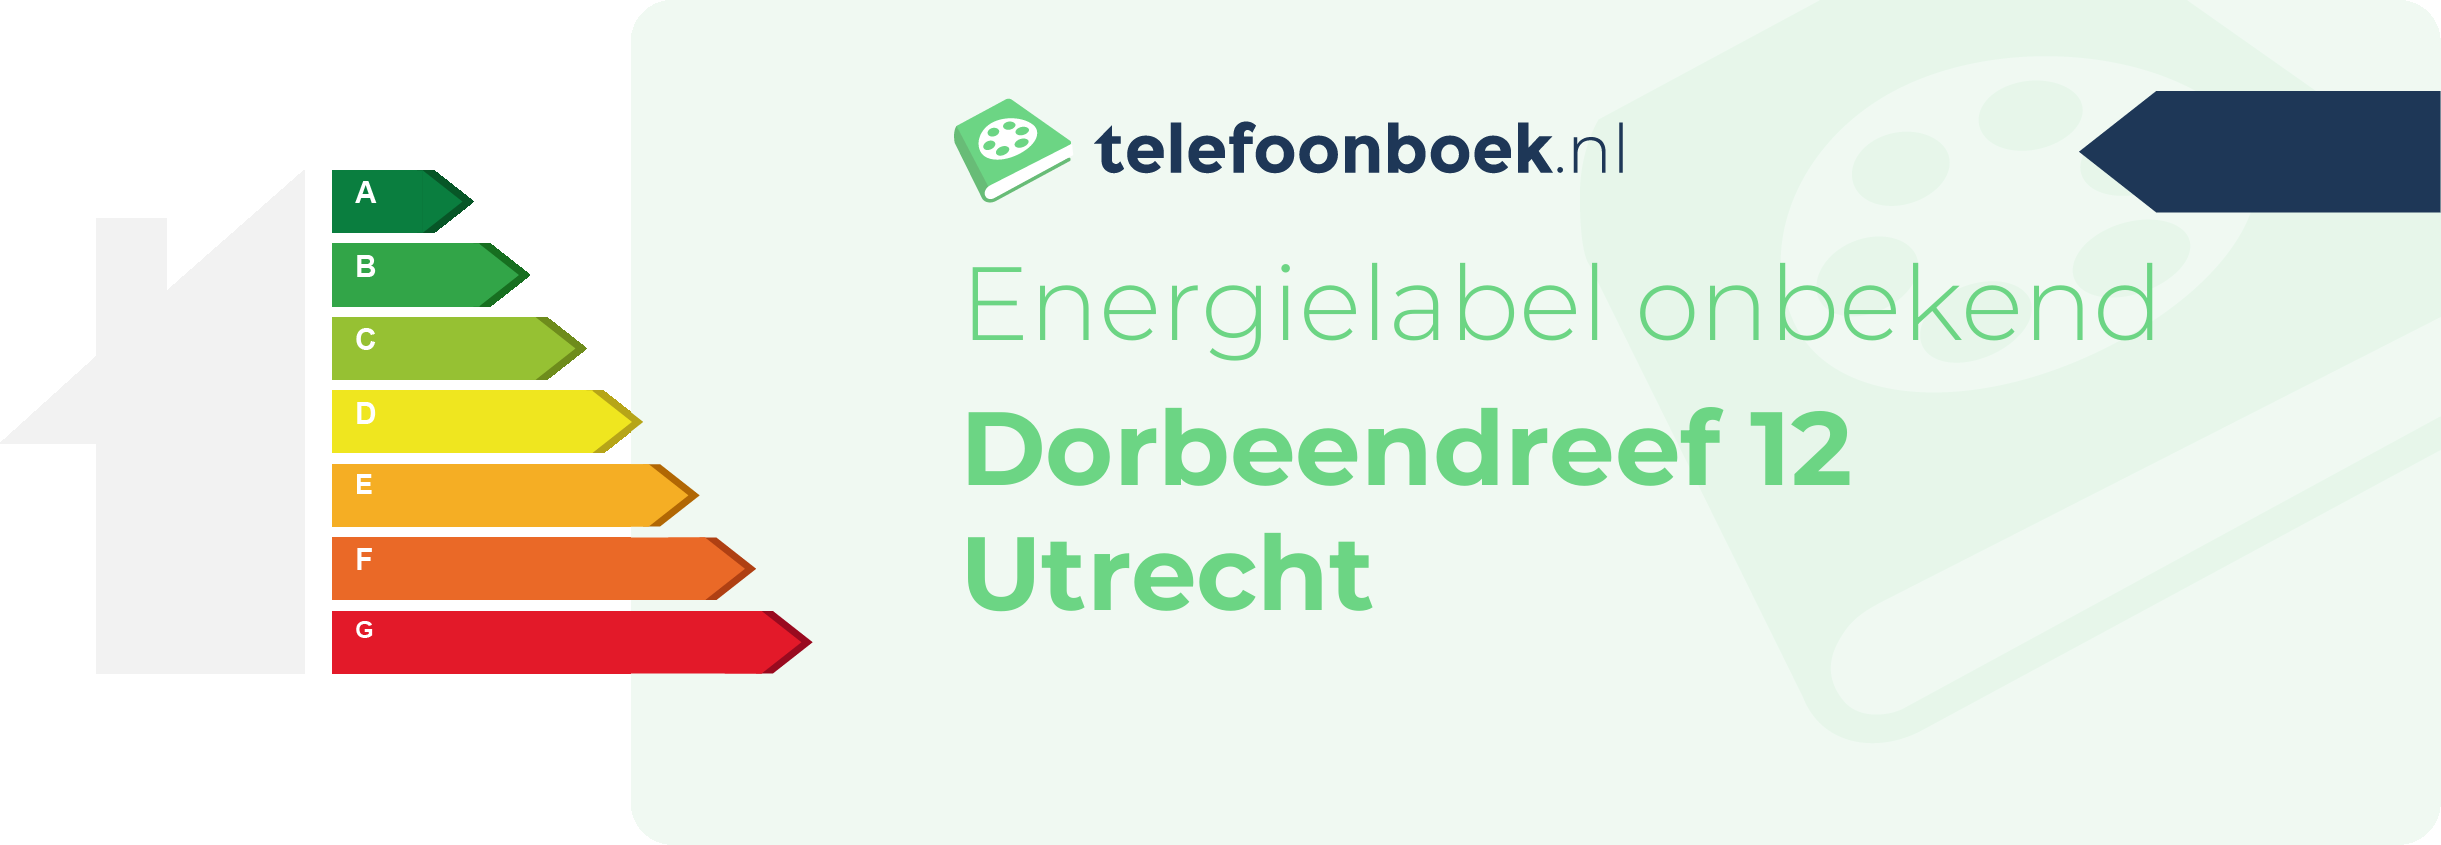 Energielabel Dorbeendreef 12 Utrecht